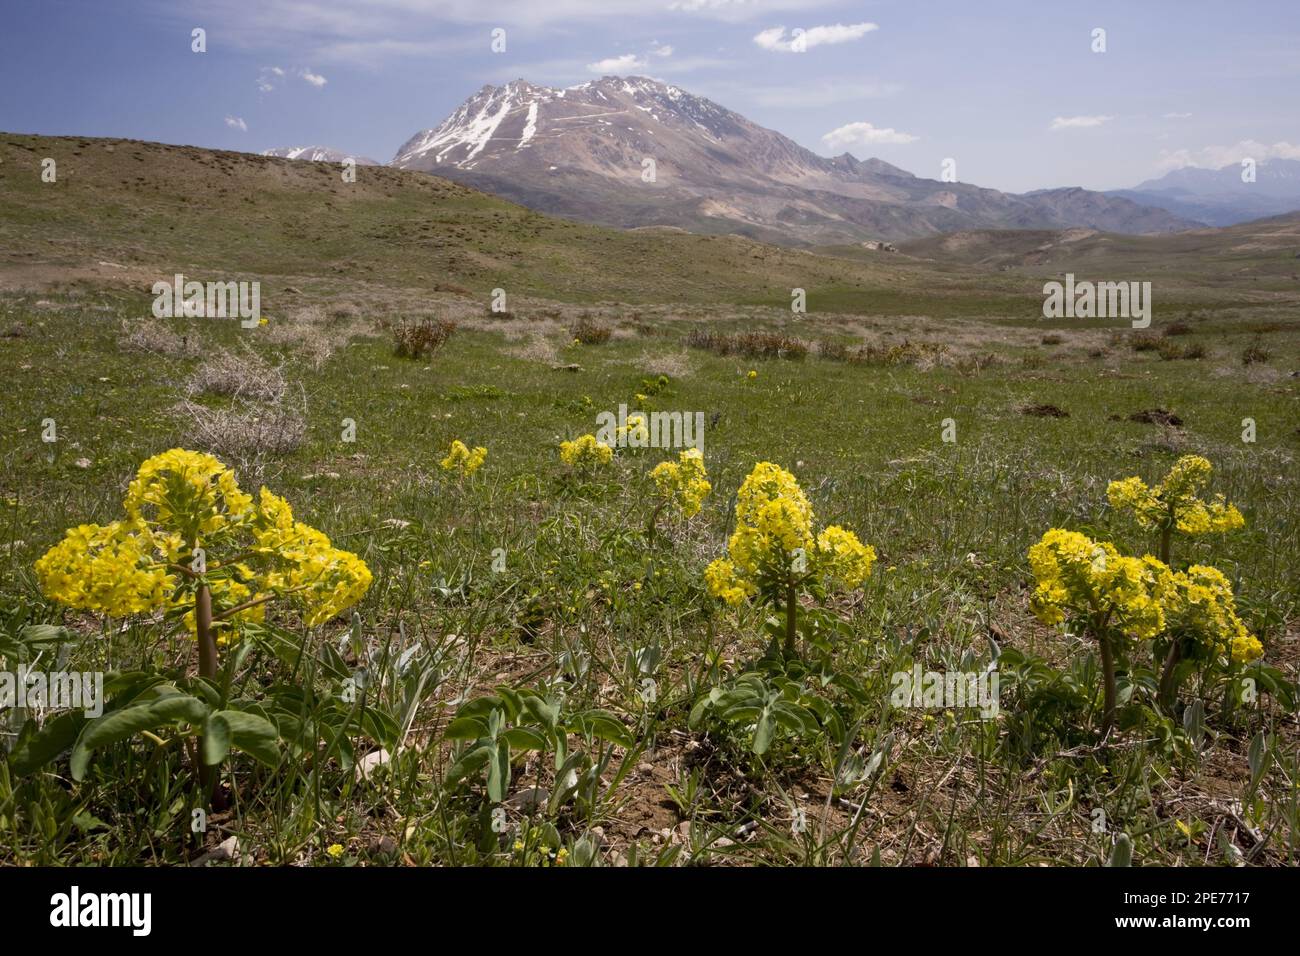 Lion's foot (Leontice leontopetalum) flowering, in montane habitat, Anatolia, Turkey Stock Photo